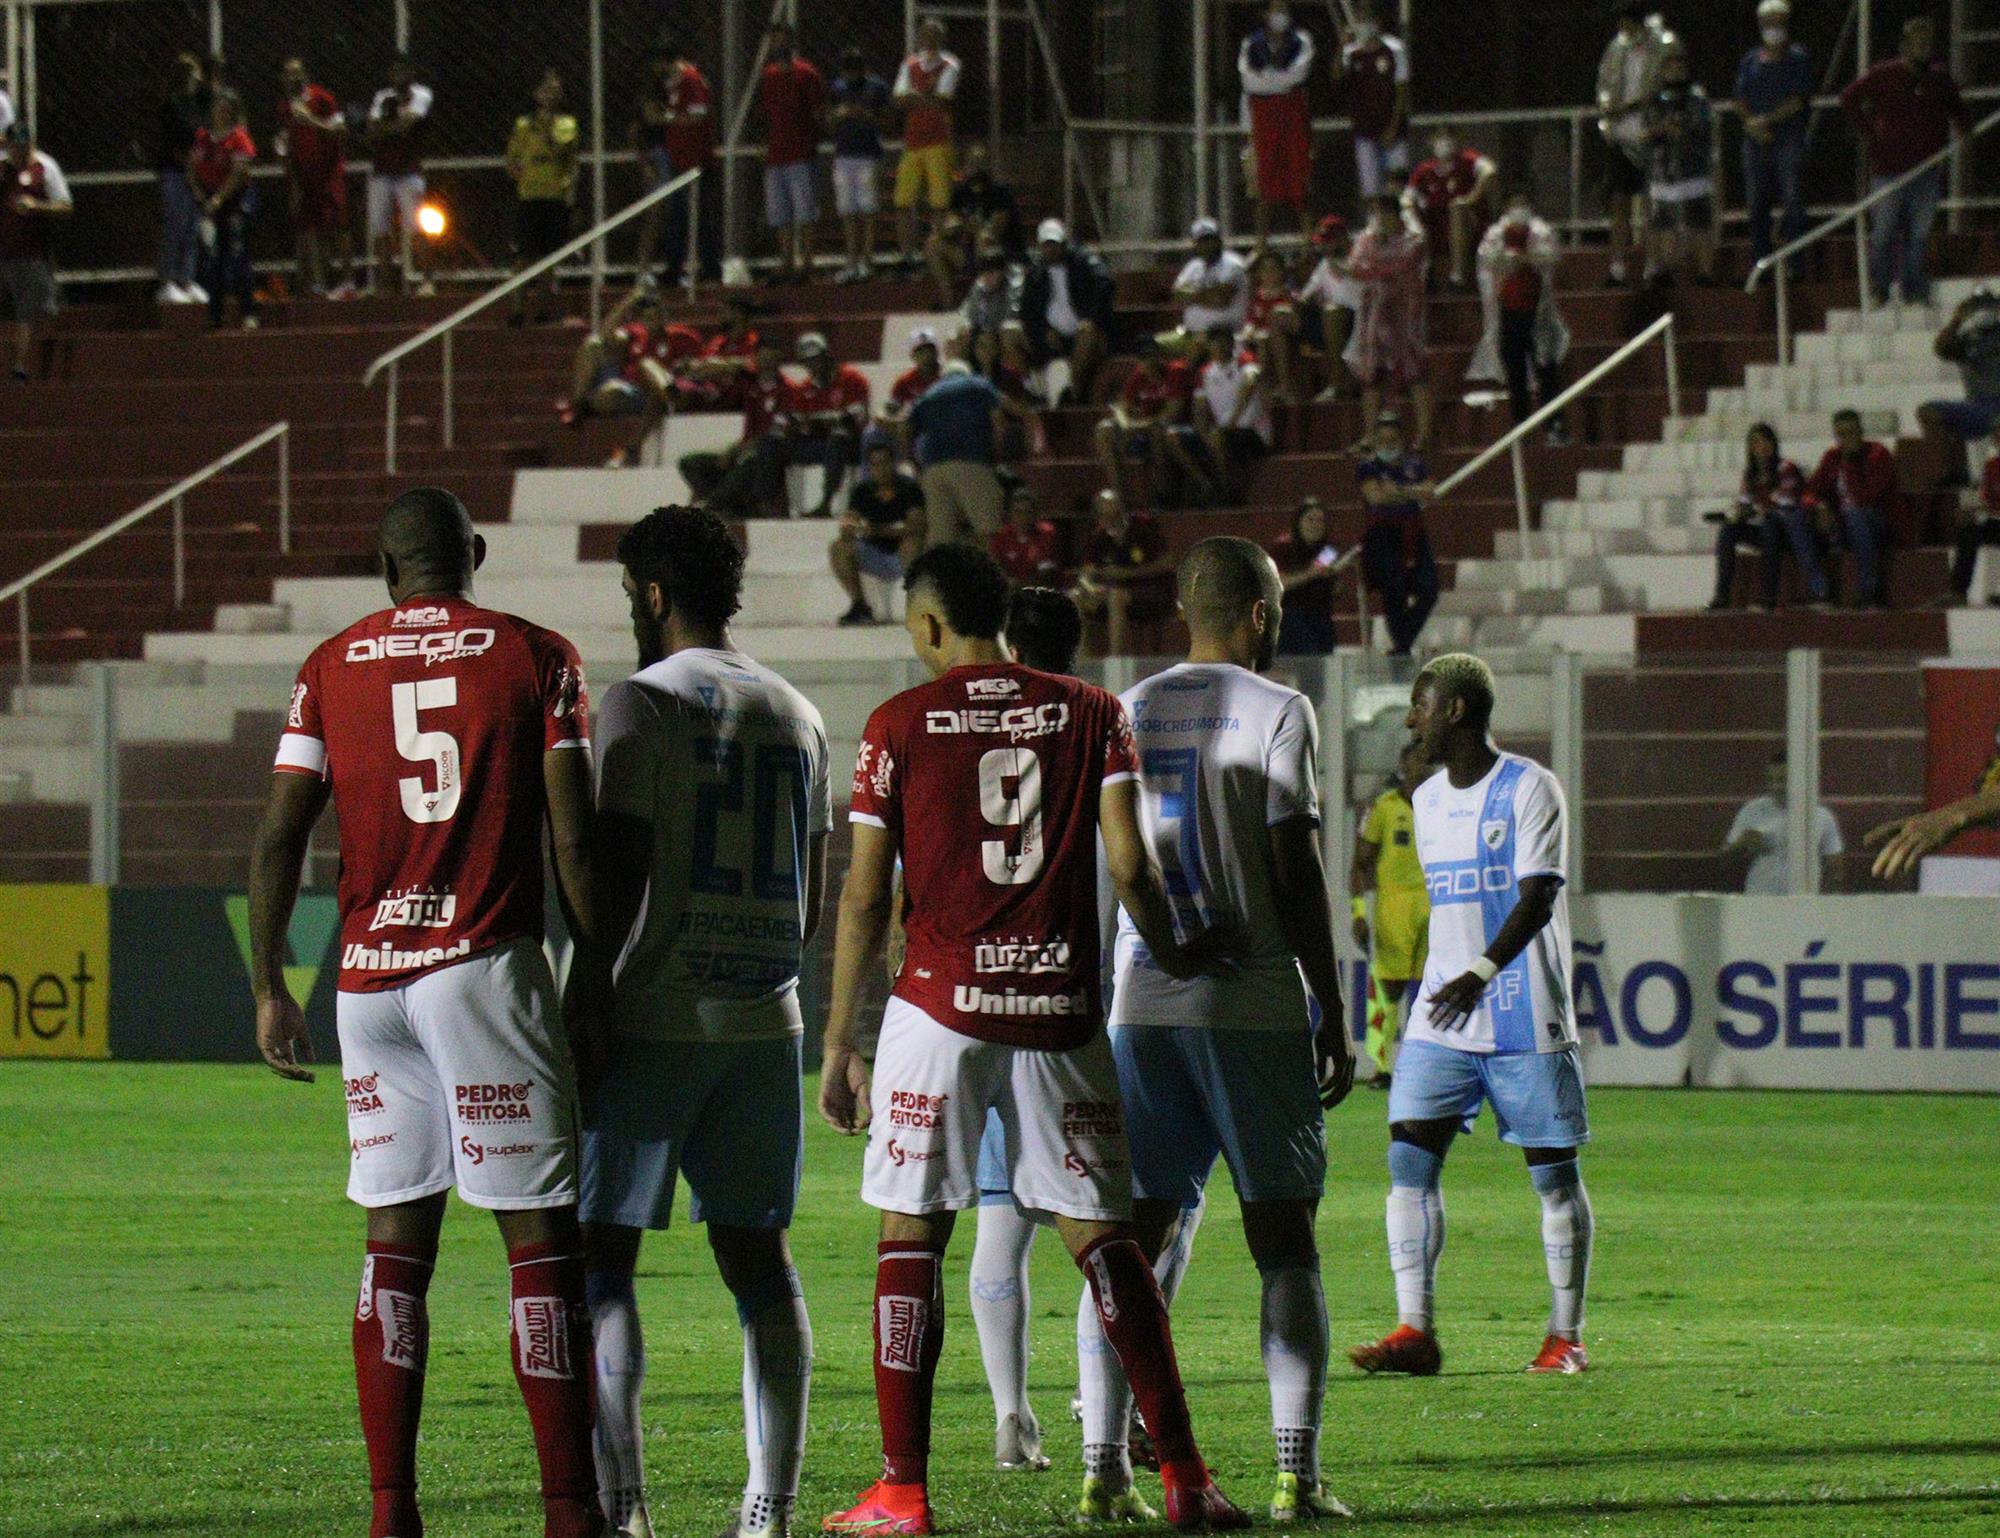 Em jogo morno pela Série B, Vila Nova e Londrina empatam por 0 a 0